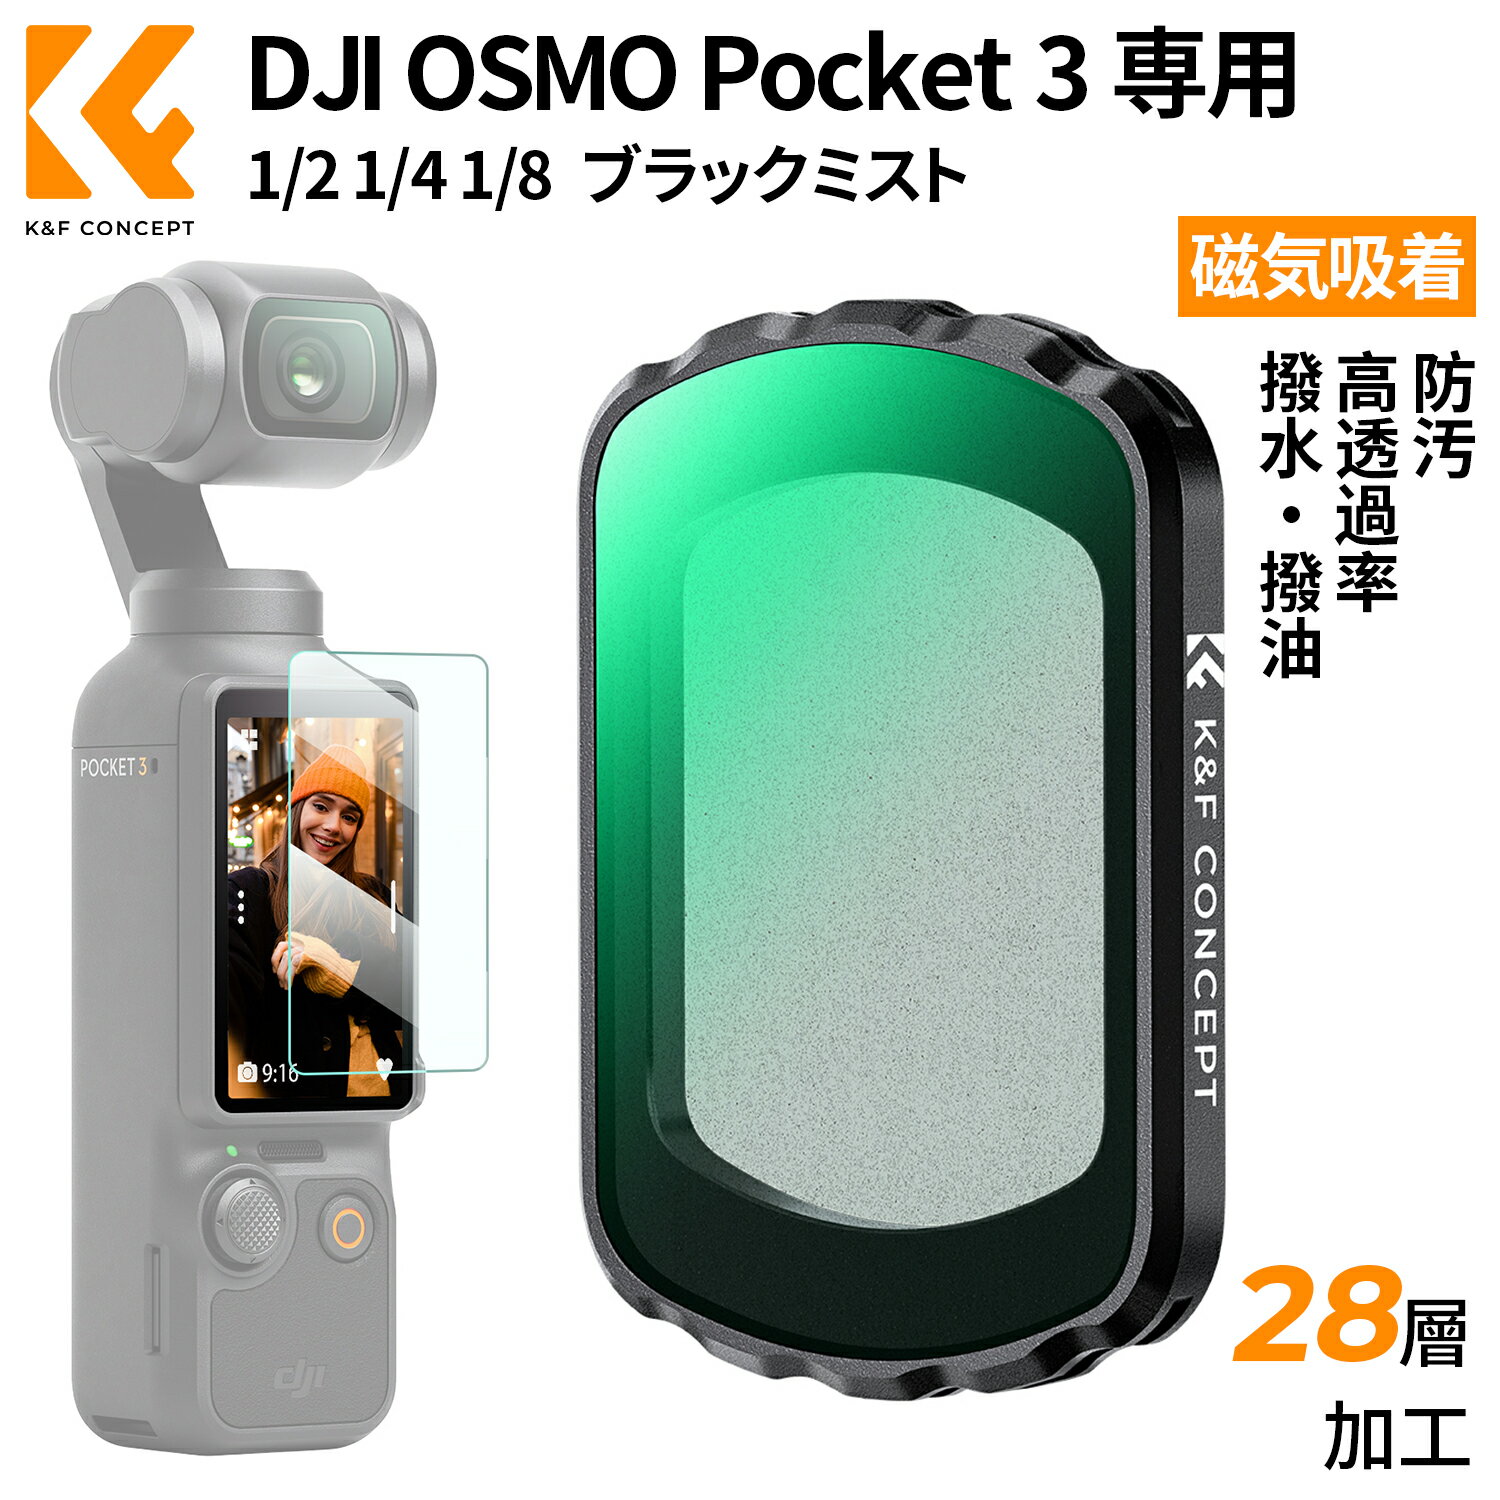 【楽天スーパーSALE】 K&F Concept DJI OSMO Pocket 3用磁気式フィルター ブラックミスト 1/2 1/4 1/8 ソフト効果 磁気吸着 装着便利 コントラスト調整用 AGC光学ガラス 28層ナノコーティング 防水防汚